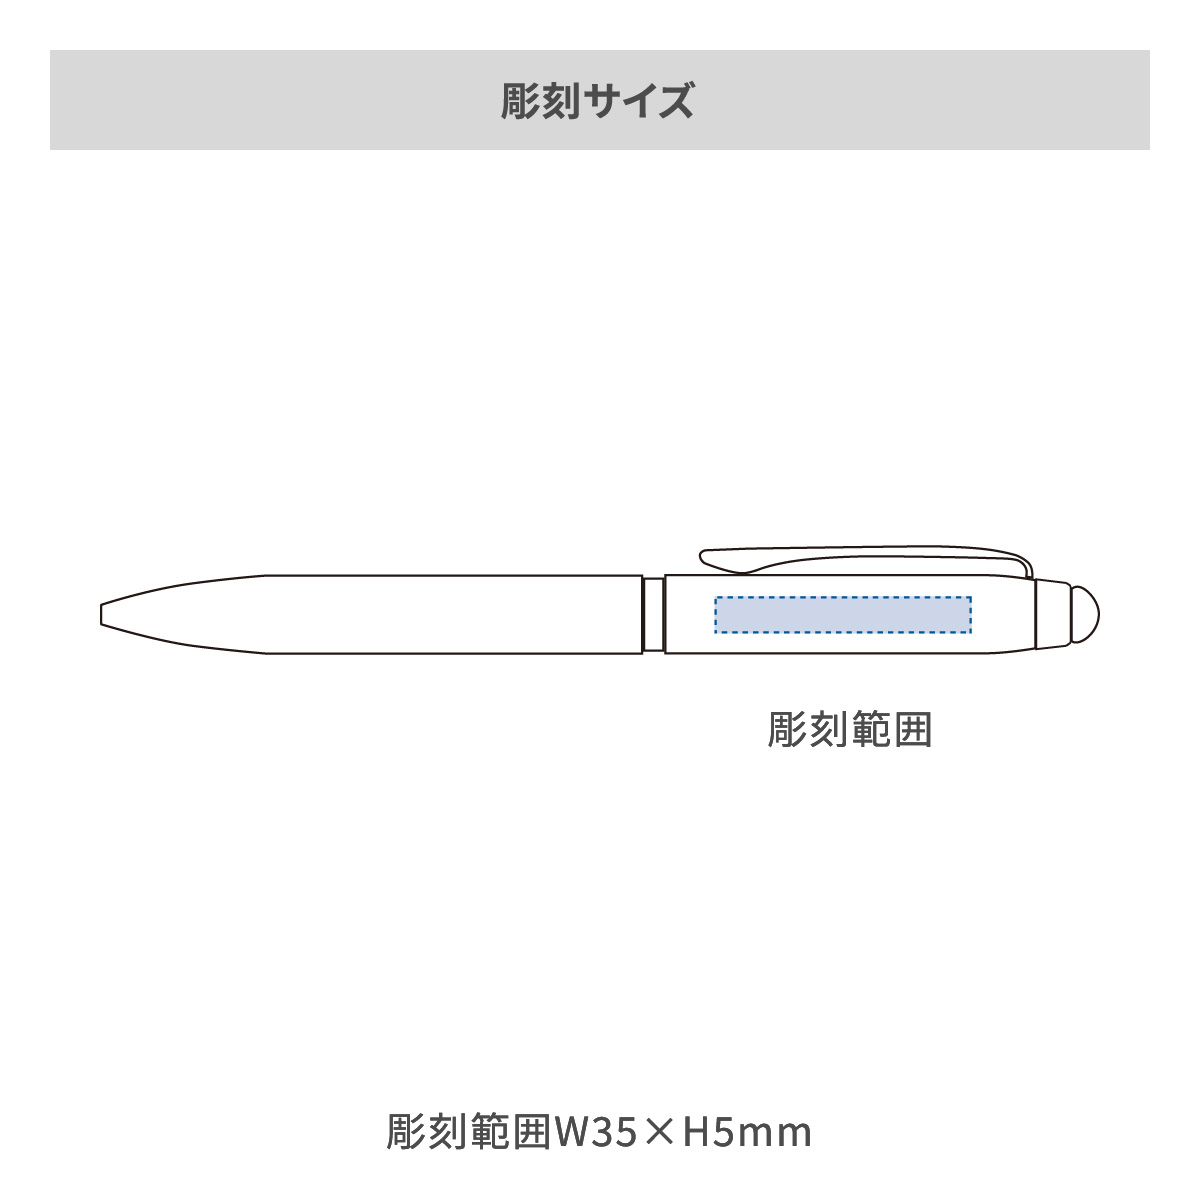 【短納期】三菱鉛筆 ジェットストリーム スタイラス 3色ボールペン 0.5mmの名入れ範囲